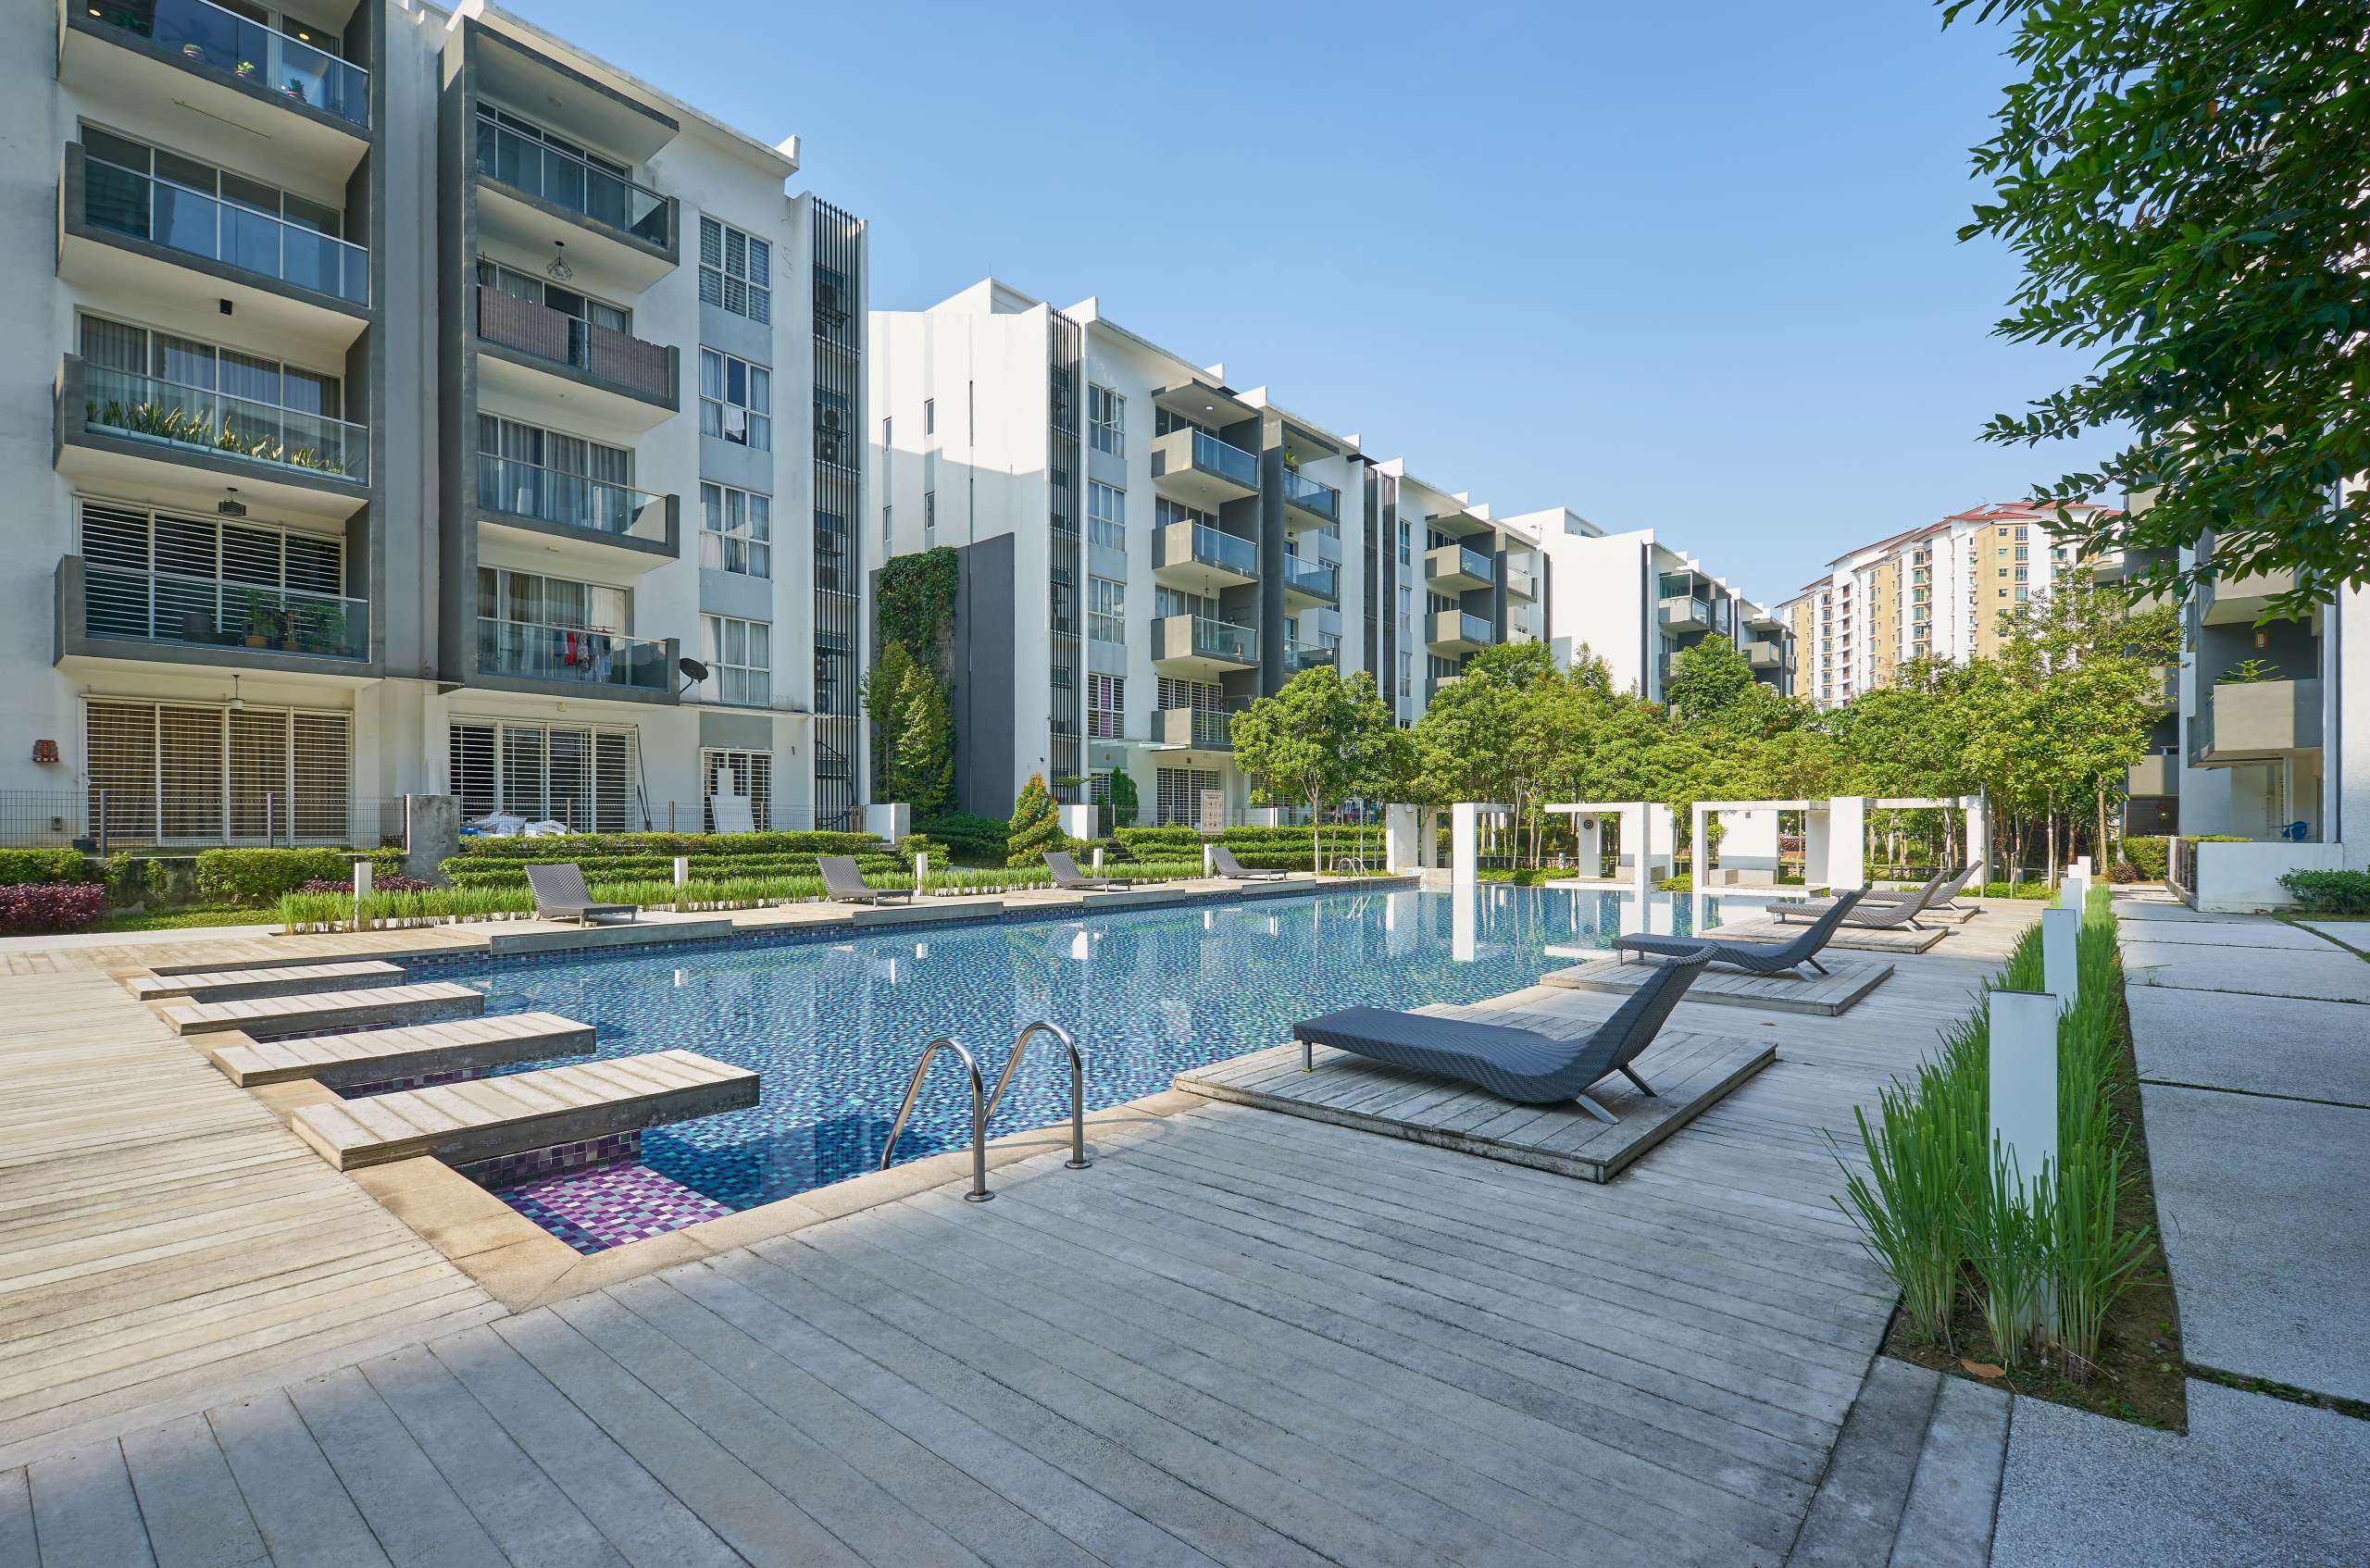 amenities in building, redevelopment, garden, swimming pool